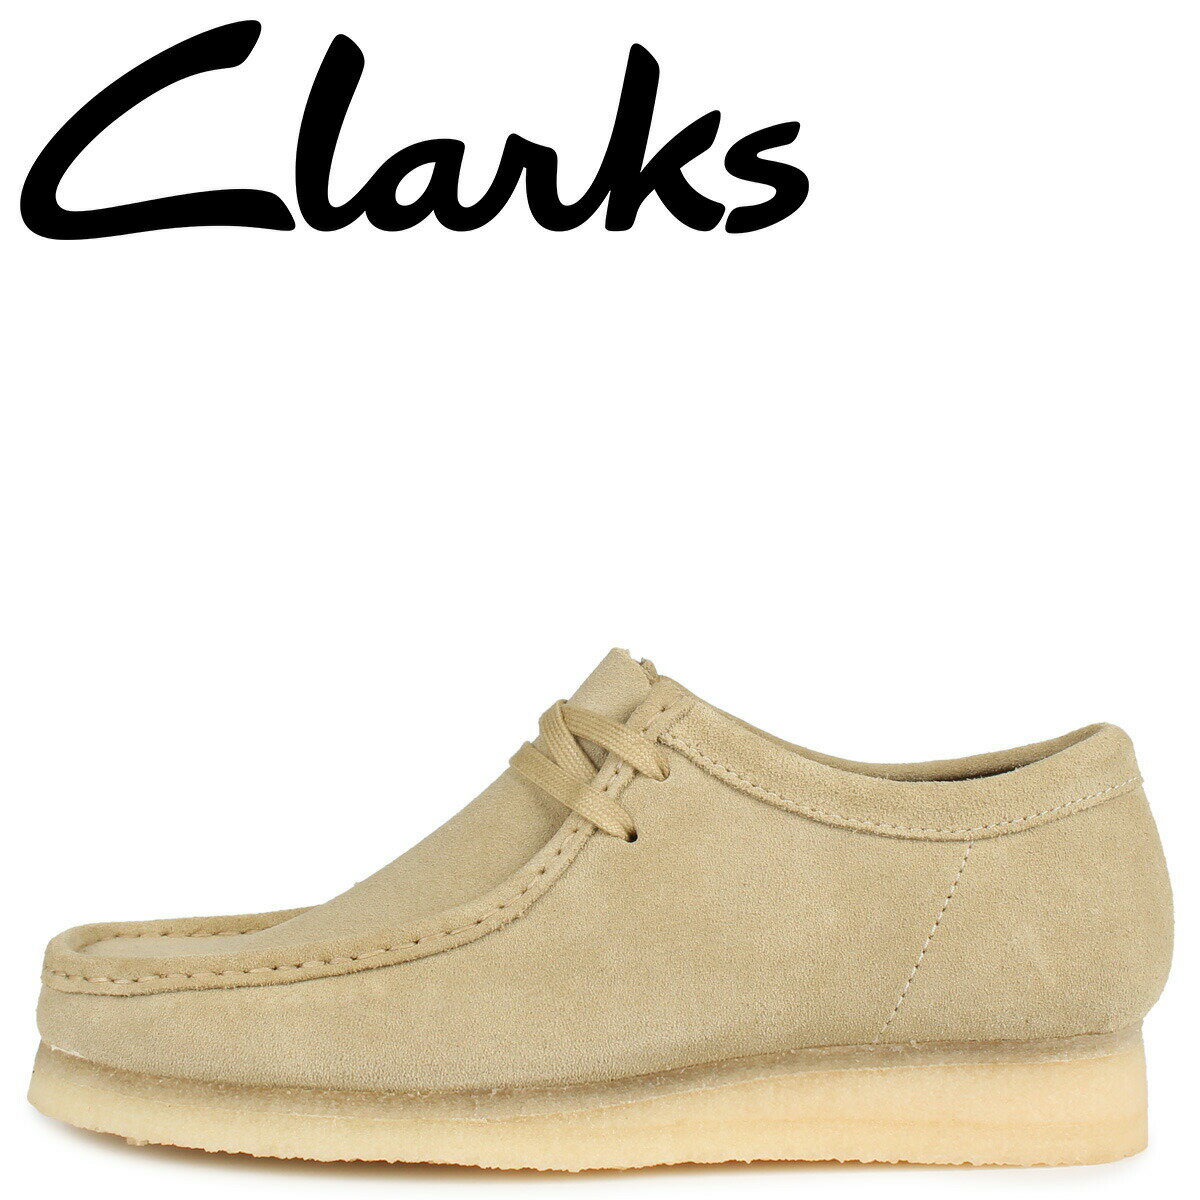 Clarks WALLABEE クラークス ワラビー ブーツ メンズ ベージュ 26155515